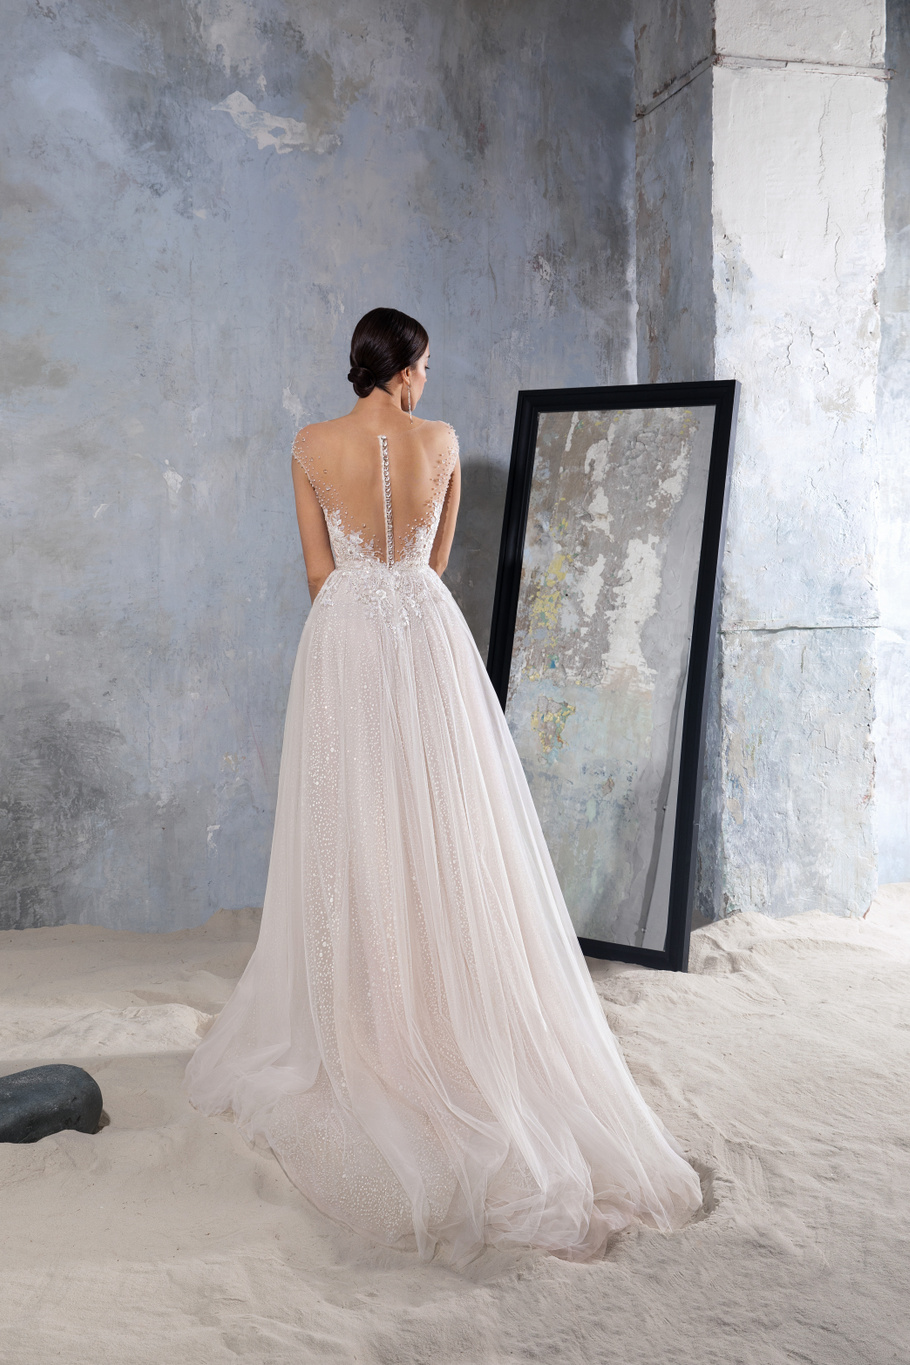 Купить свадебное платье «Ники» Секрет Споса из коллекции Блеск 2022 года в салоне «Мэри Трюфель»